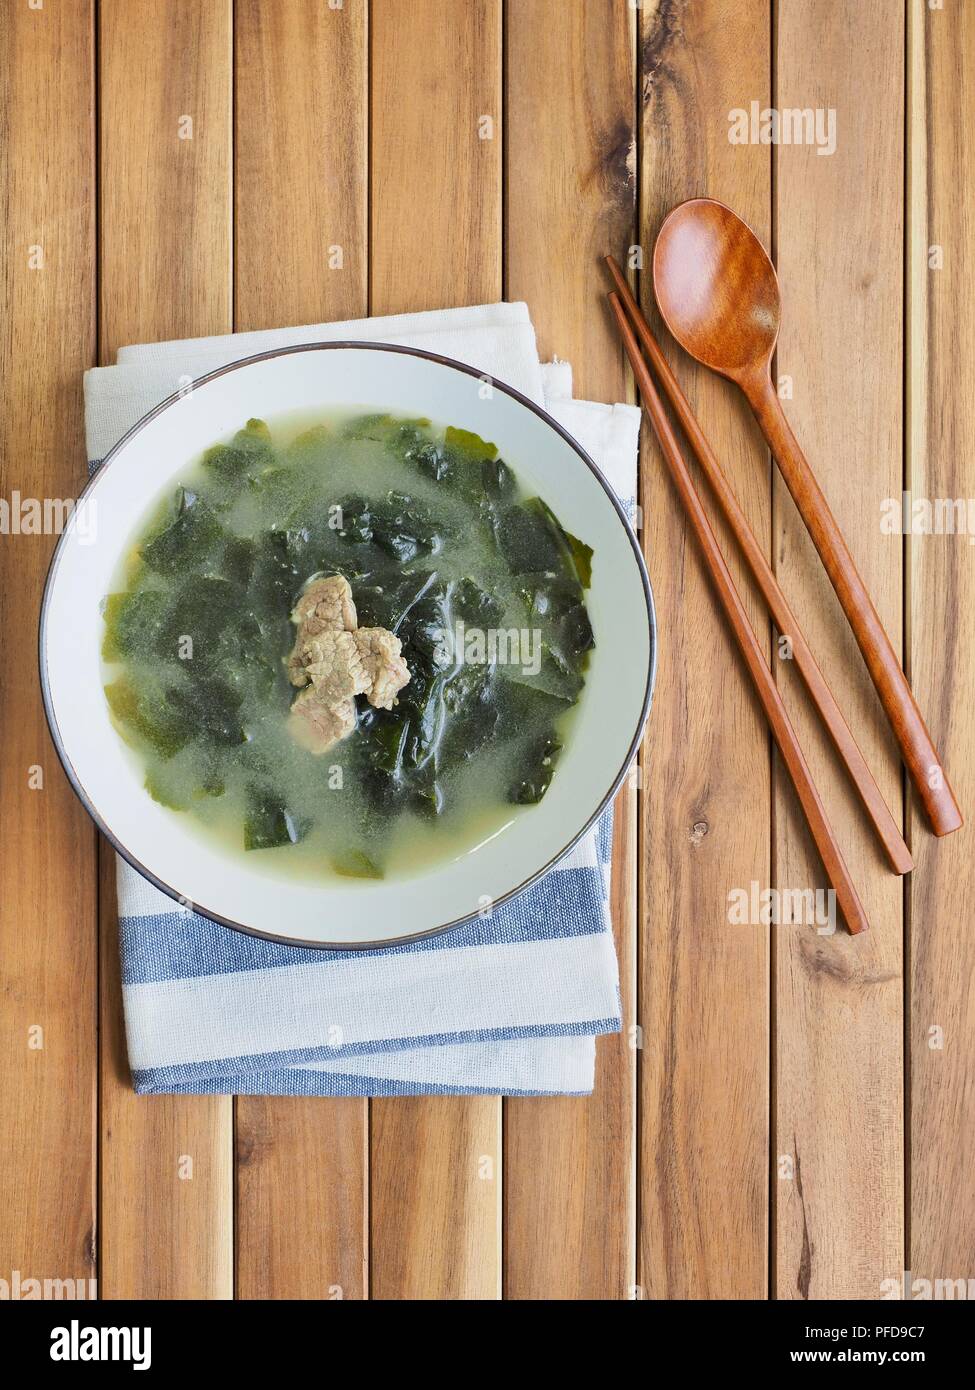 Soupe d'algues boeuf nourriture coréenne Banque D'Images